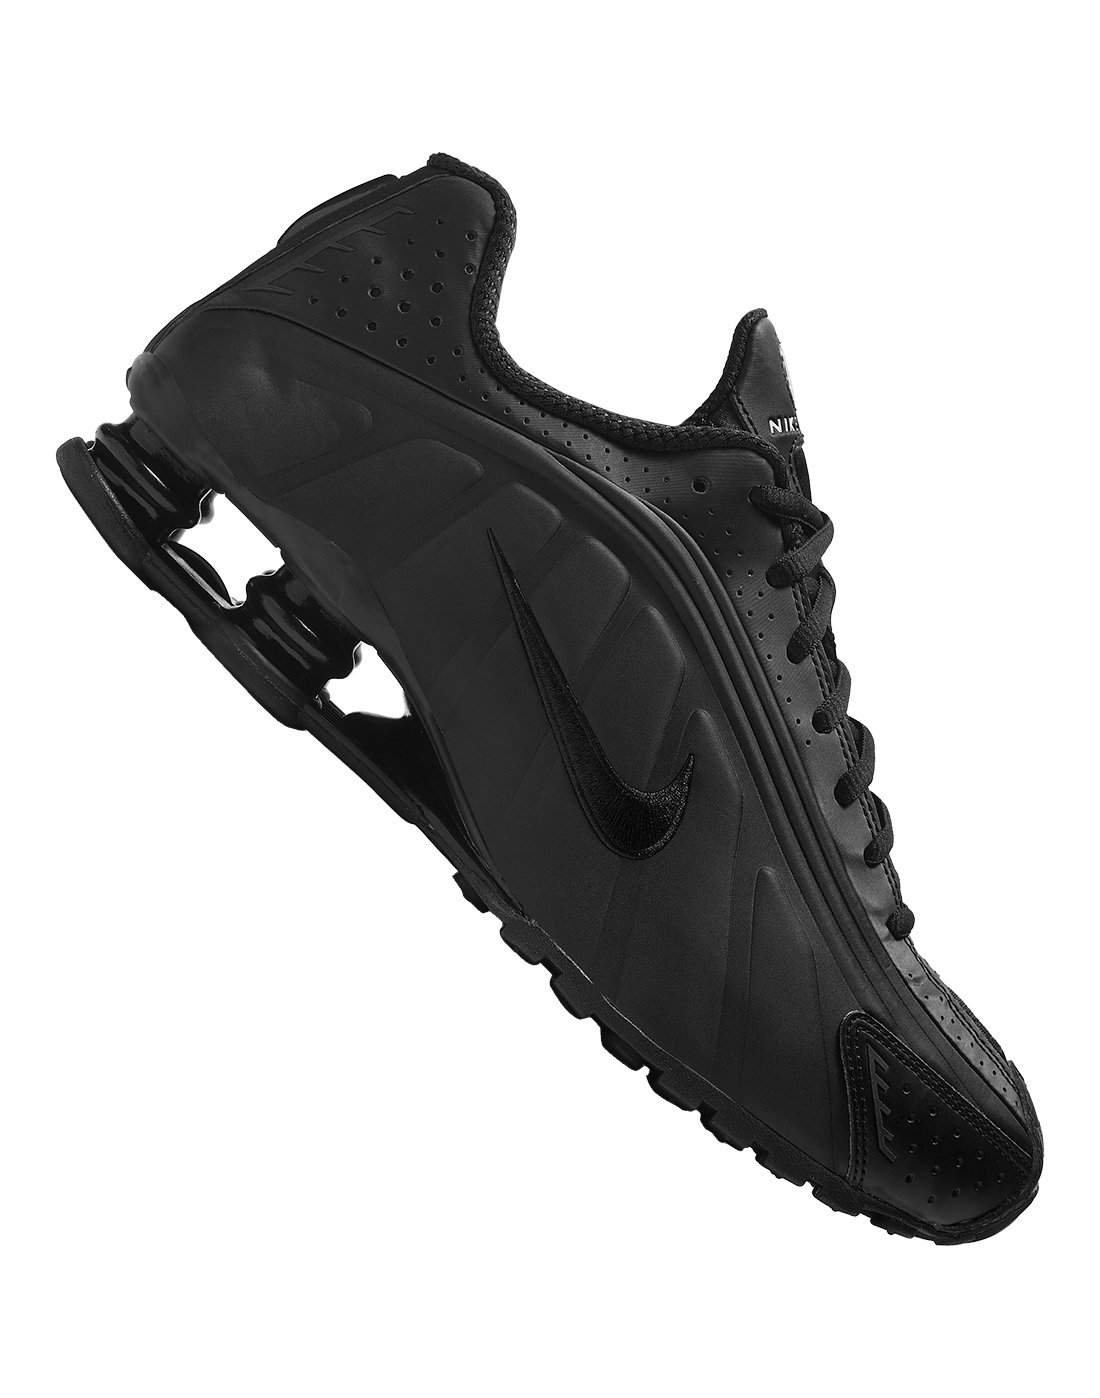 Nike Mens Shox R4 - Black | Life Style 